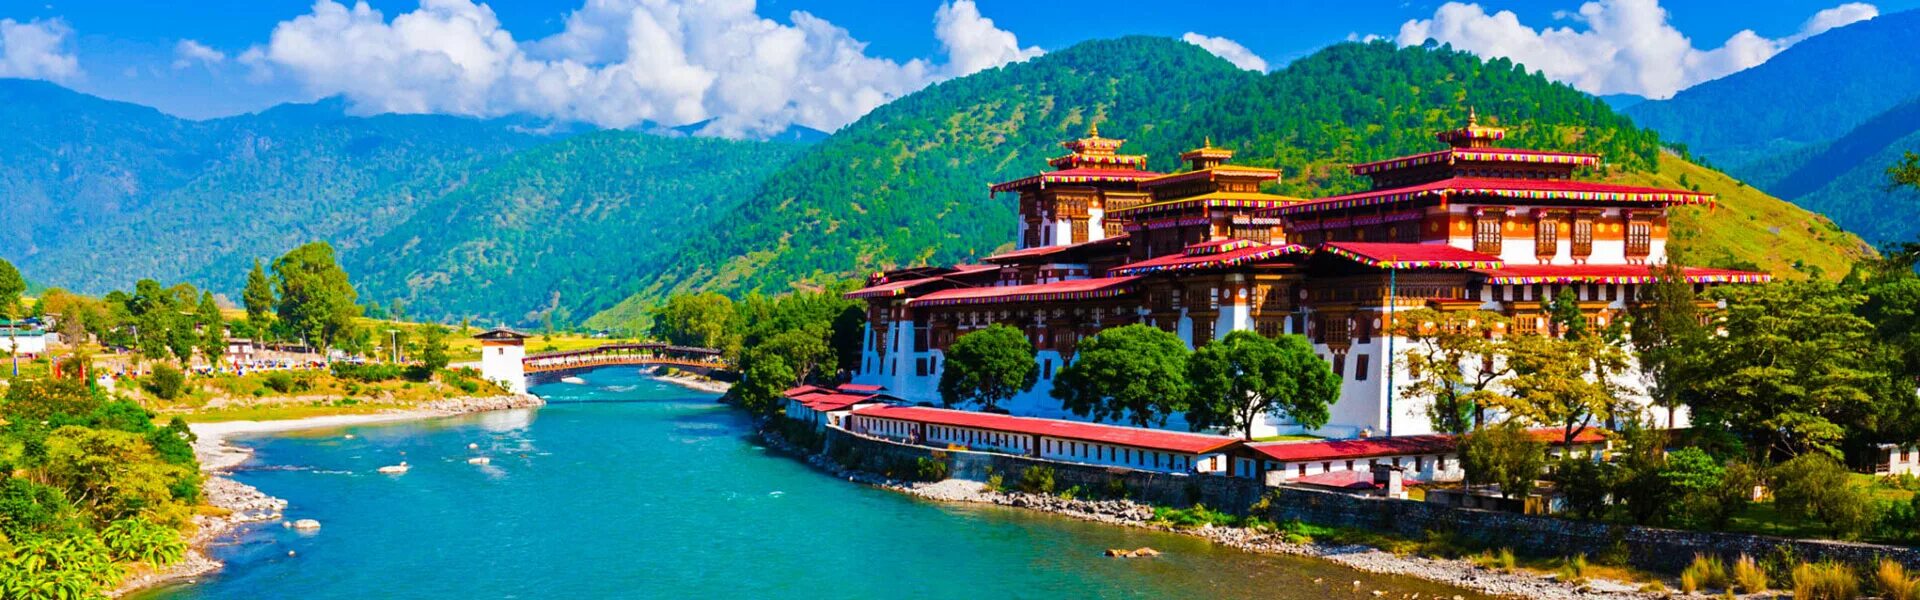 Монастырь Пунакха-дзонг. Пунакха-дзонг бутан. Тхимпху достопримечательности. Бутан достопримечательности. Т бутан